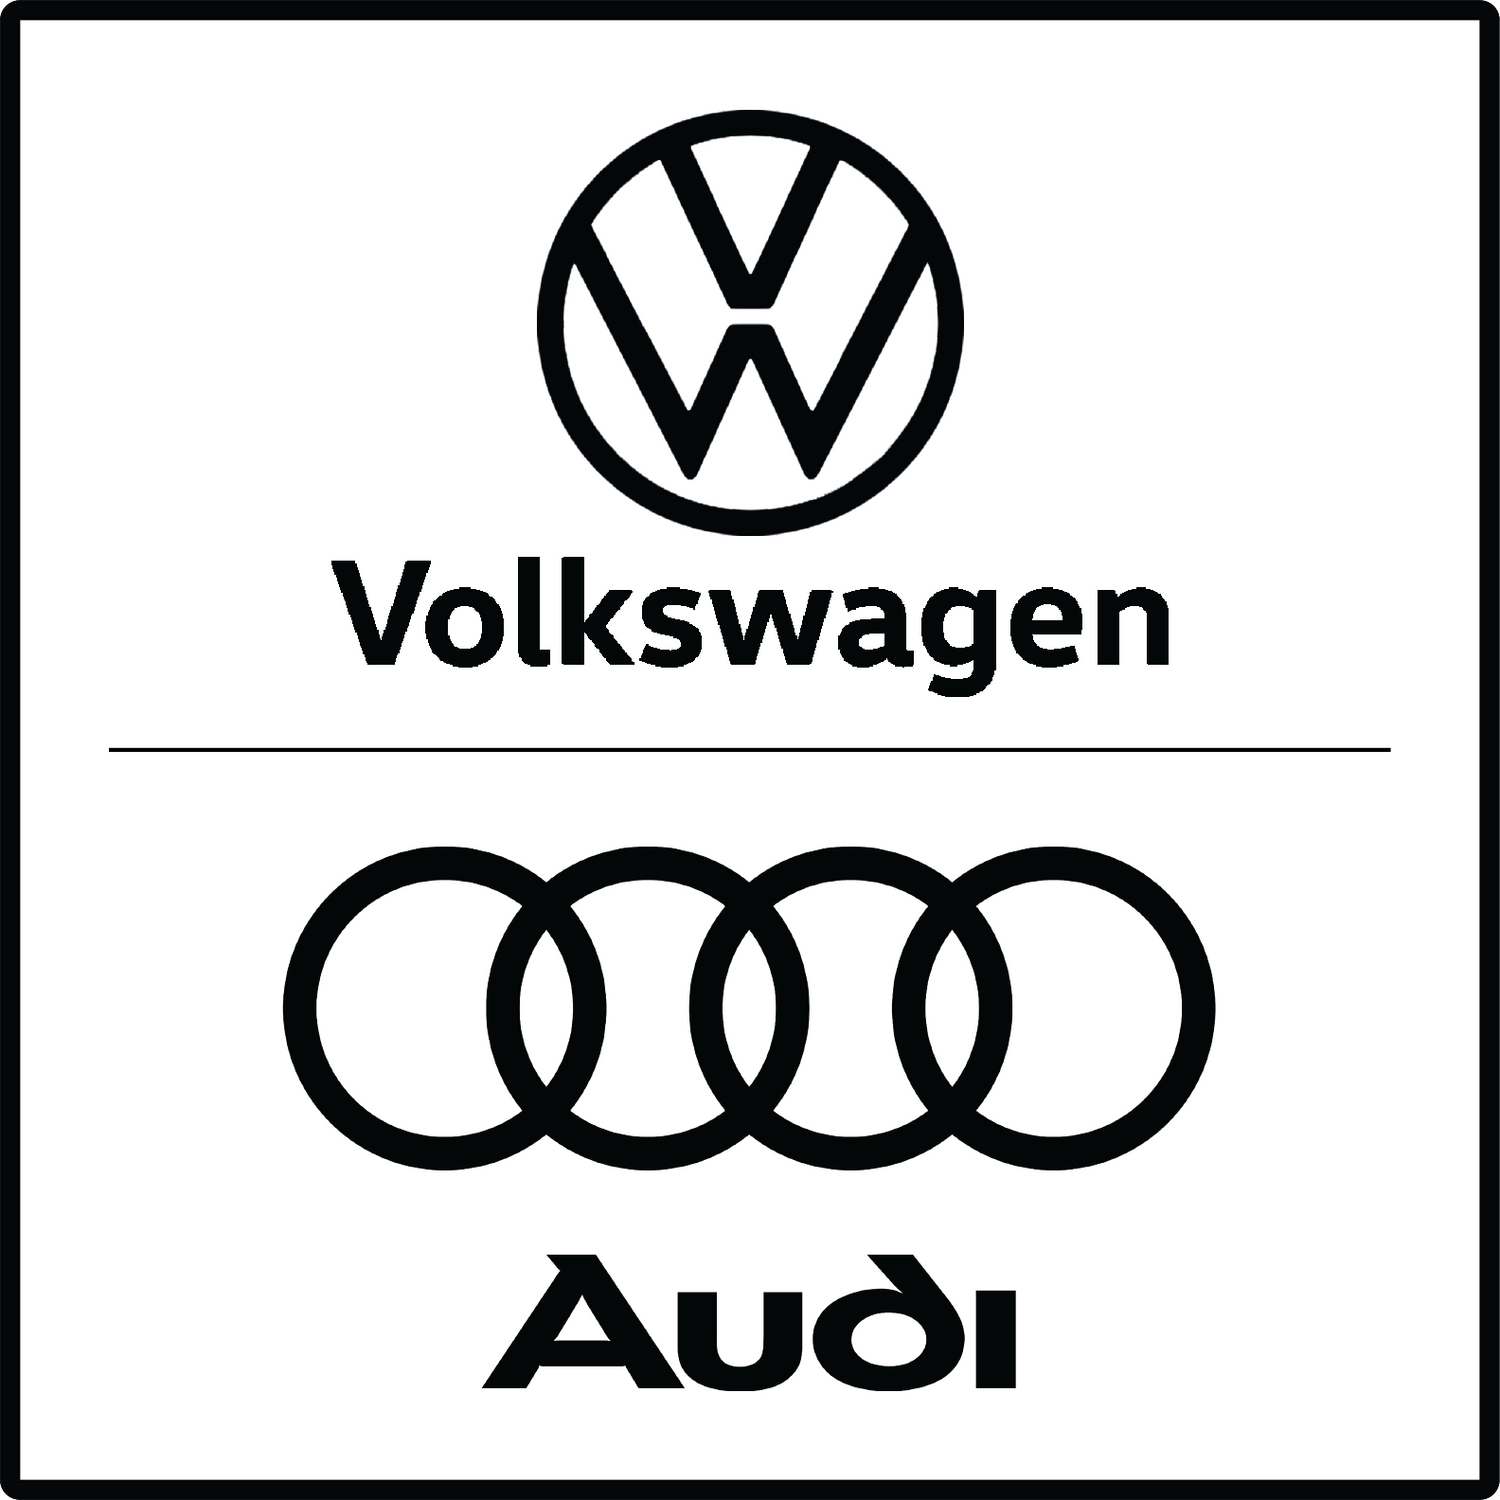 Audi / Volkswagen